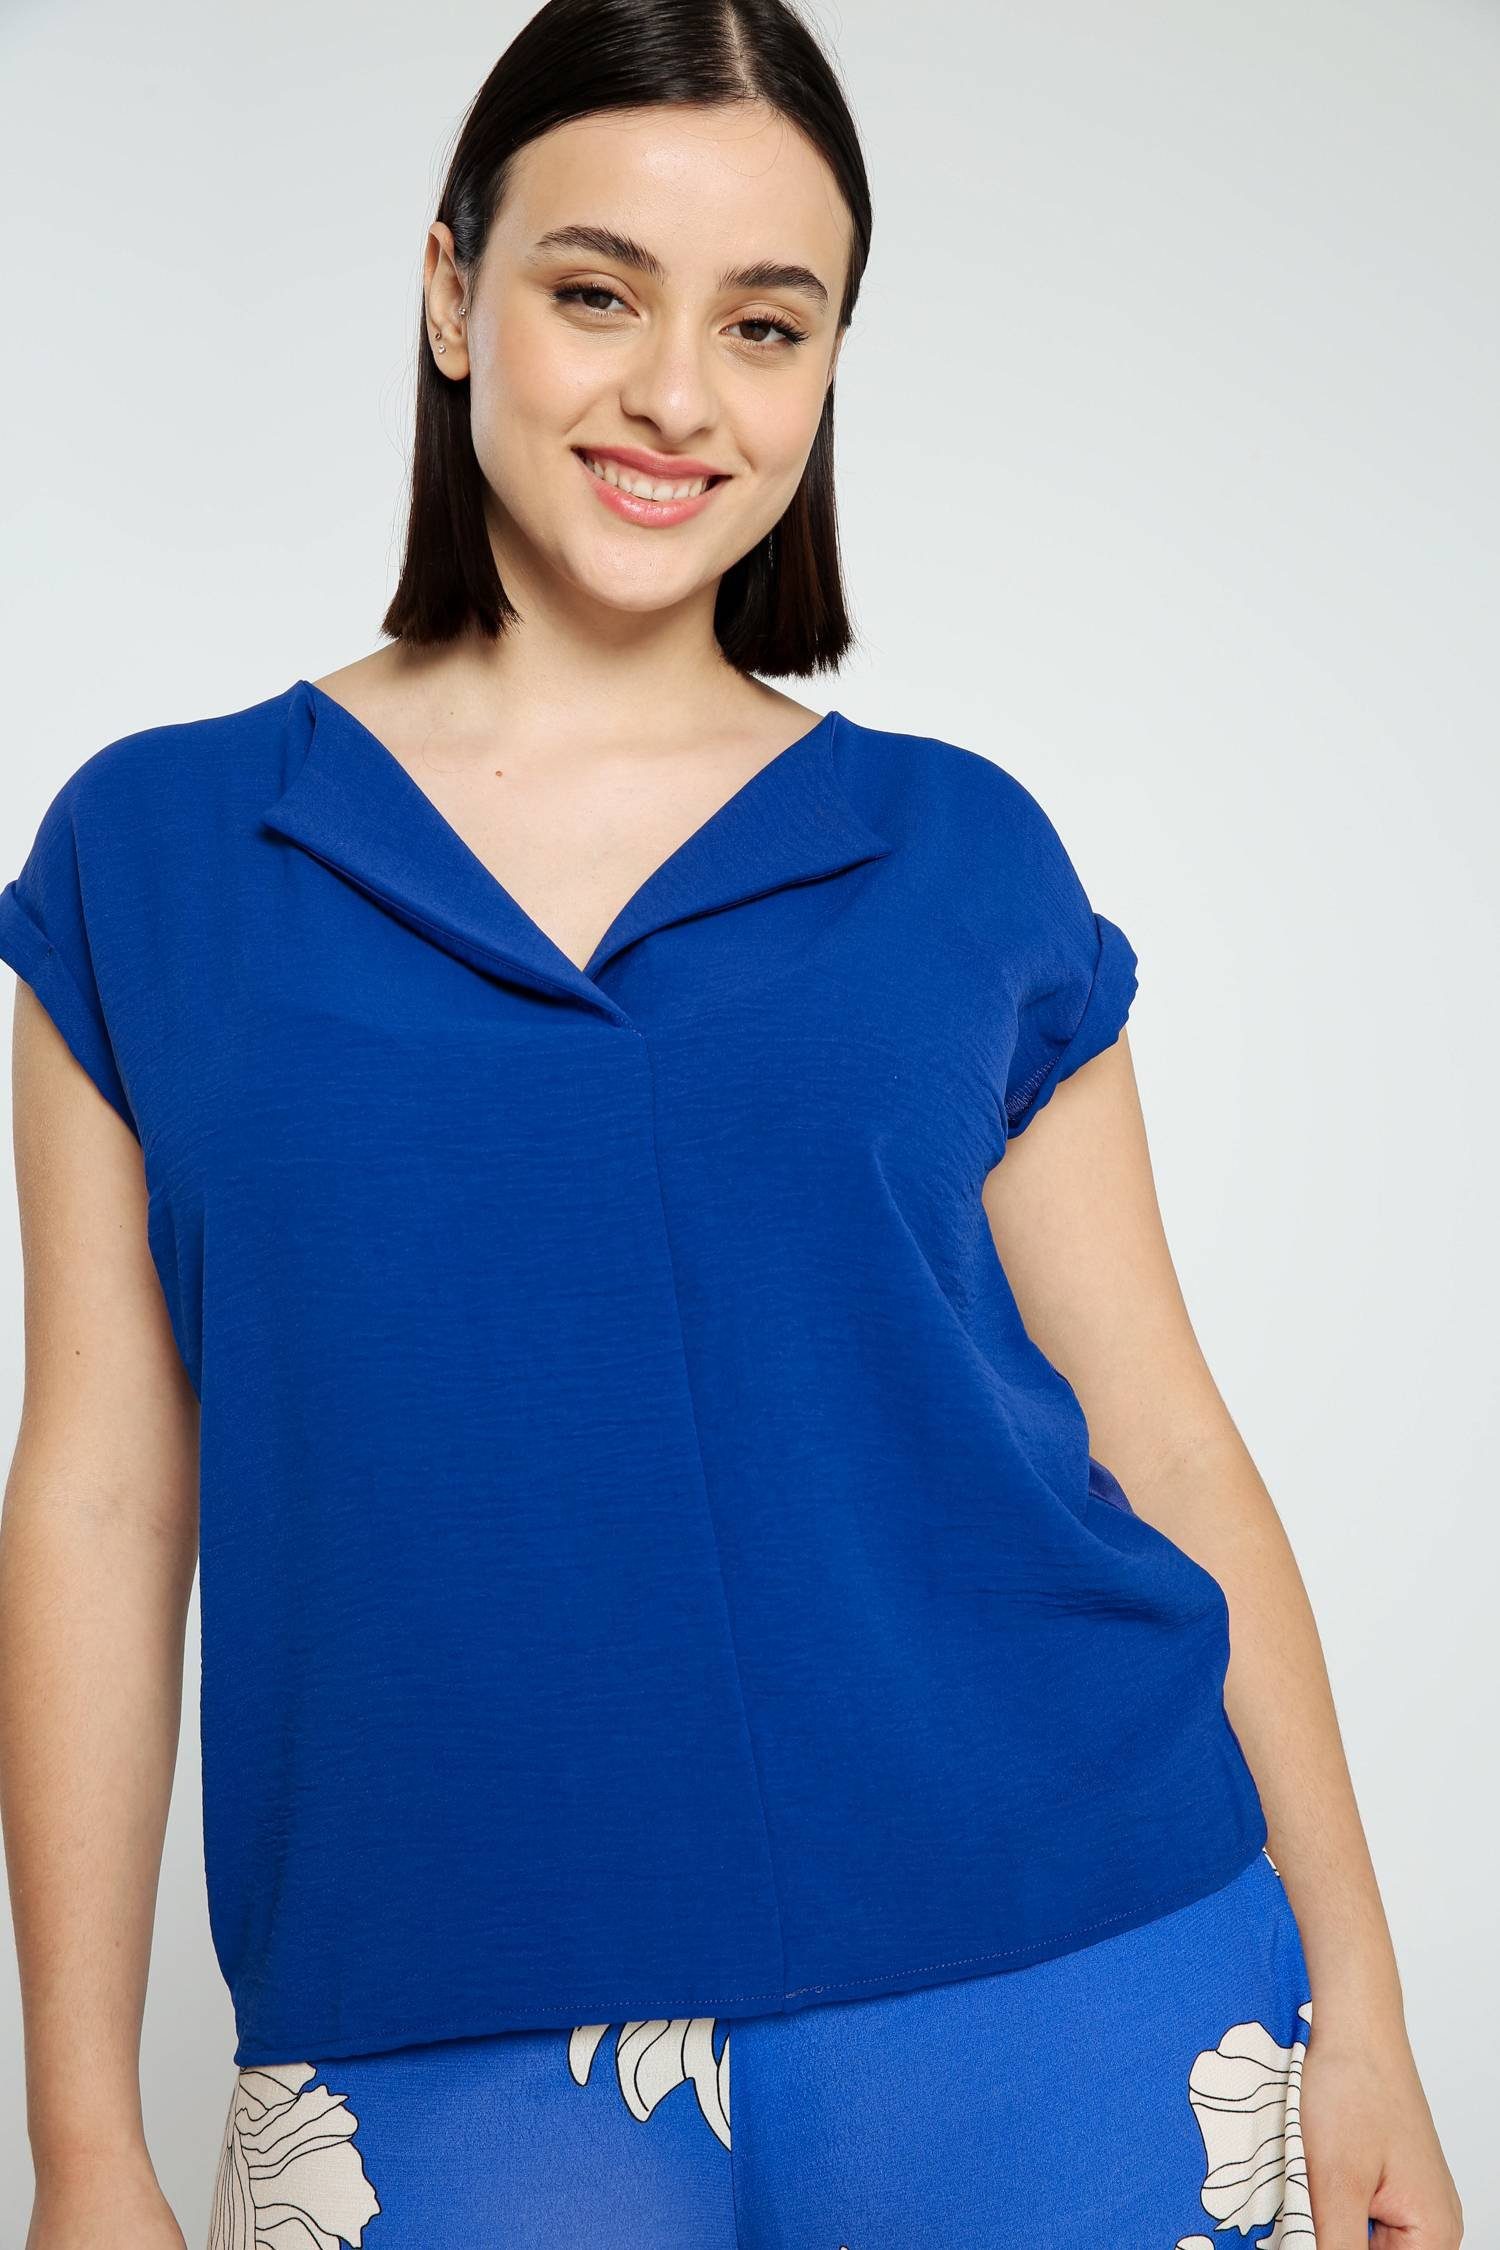 Kragen Bic T-Shirt Unifarbenes Blau Cassis Bearbeitetem Mit T-Shirt